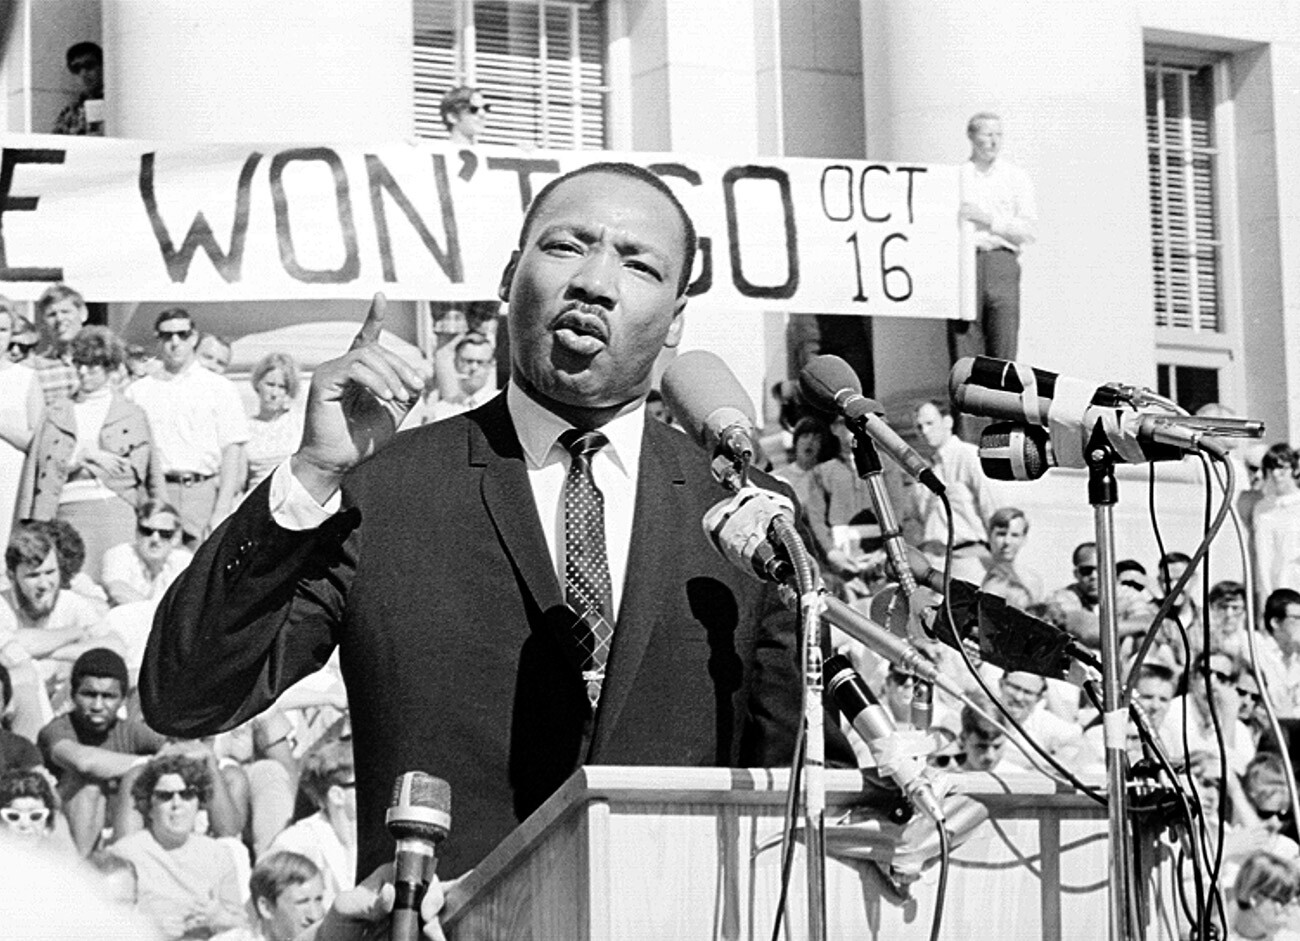  Лидерът на отбраната на гражданските права преподобният Мартин Лутър Кинг младши изнася тирада пред навалица от почти 7000 души на 17 май 1967 година в Sproul Plaza на UC Berkeley в Бъркли, Калифорния 